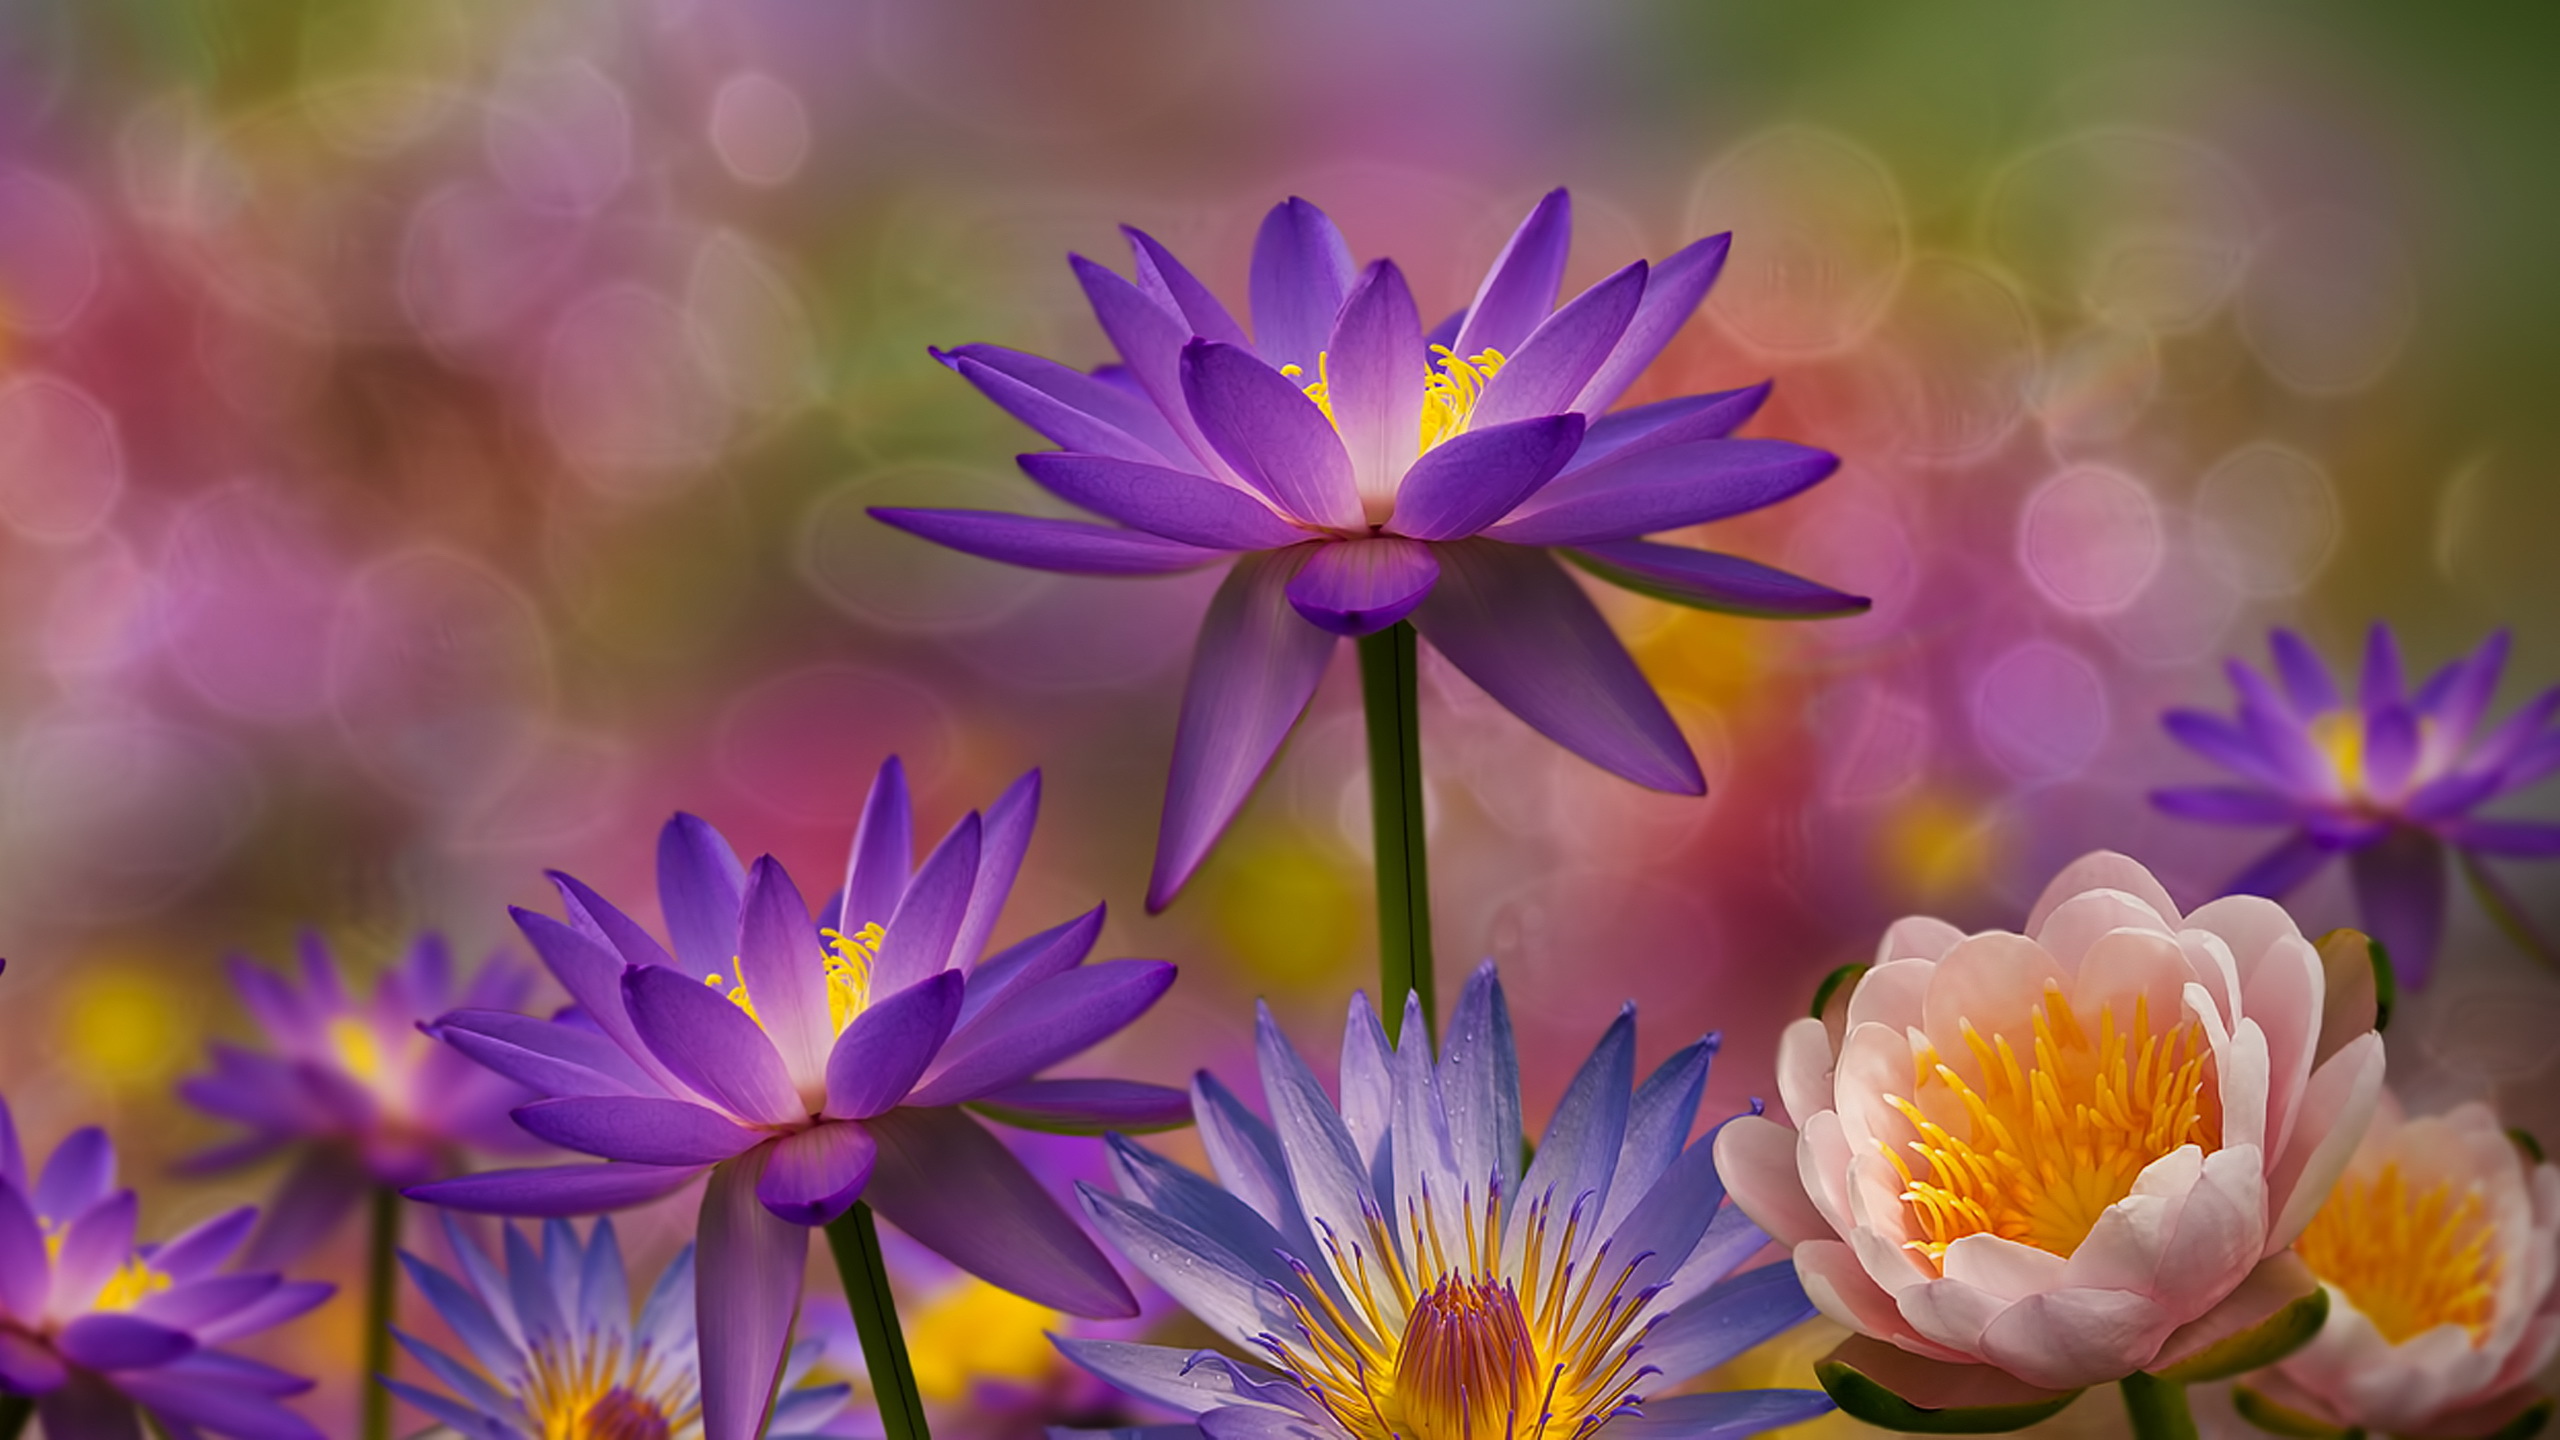 Bokeh Earth Flower Lotus Purple Flower Water Lily 2560x1440